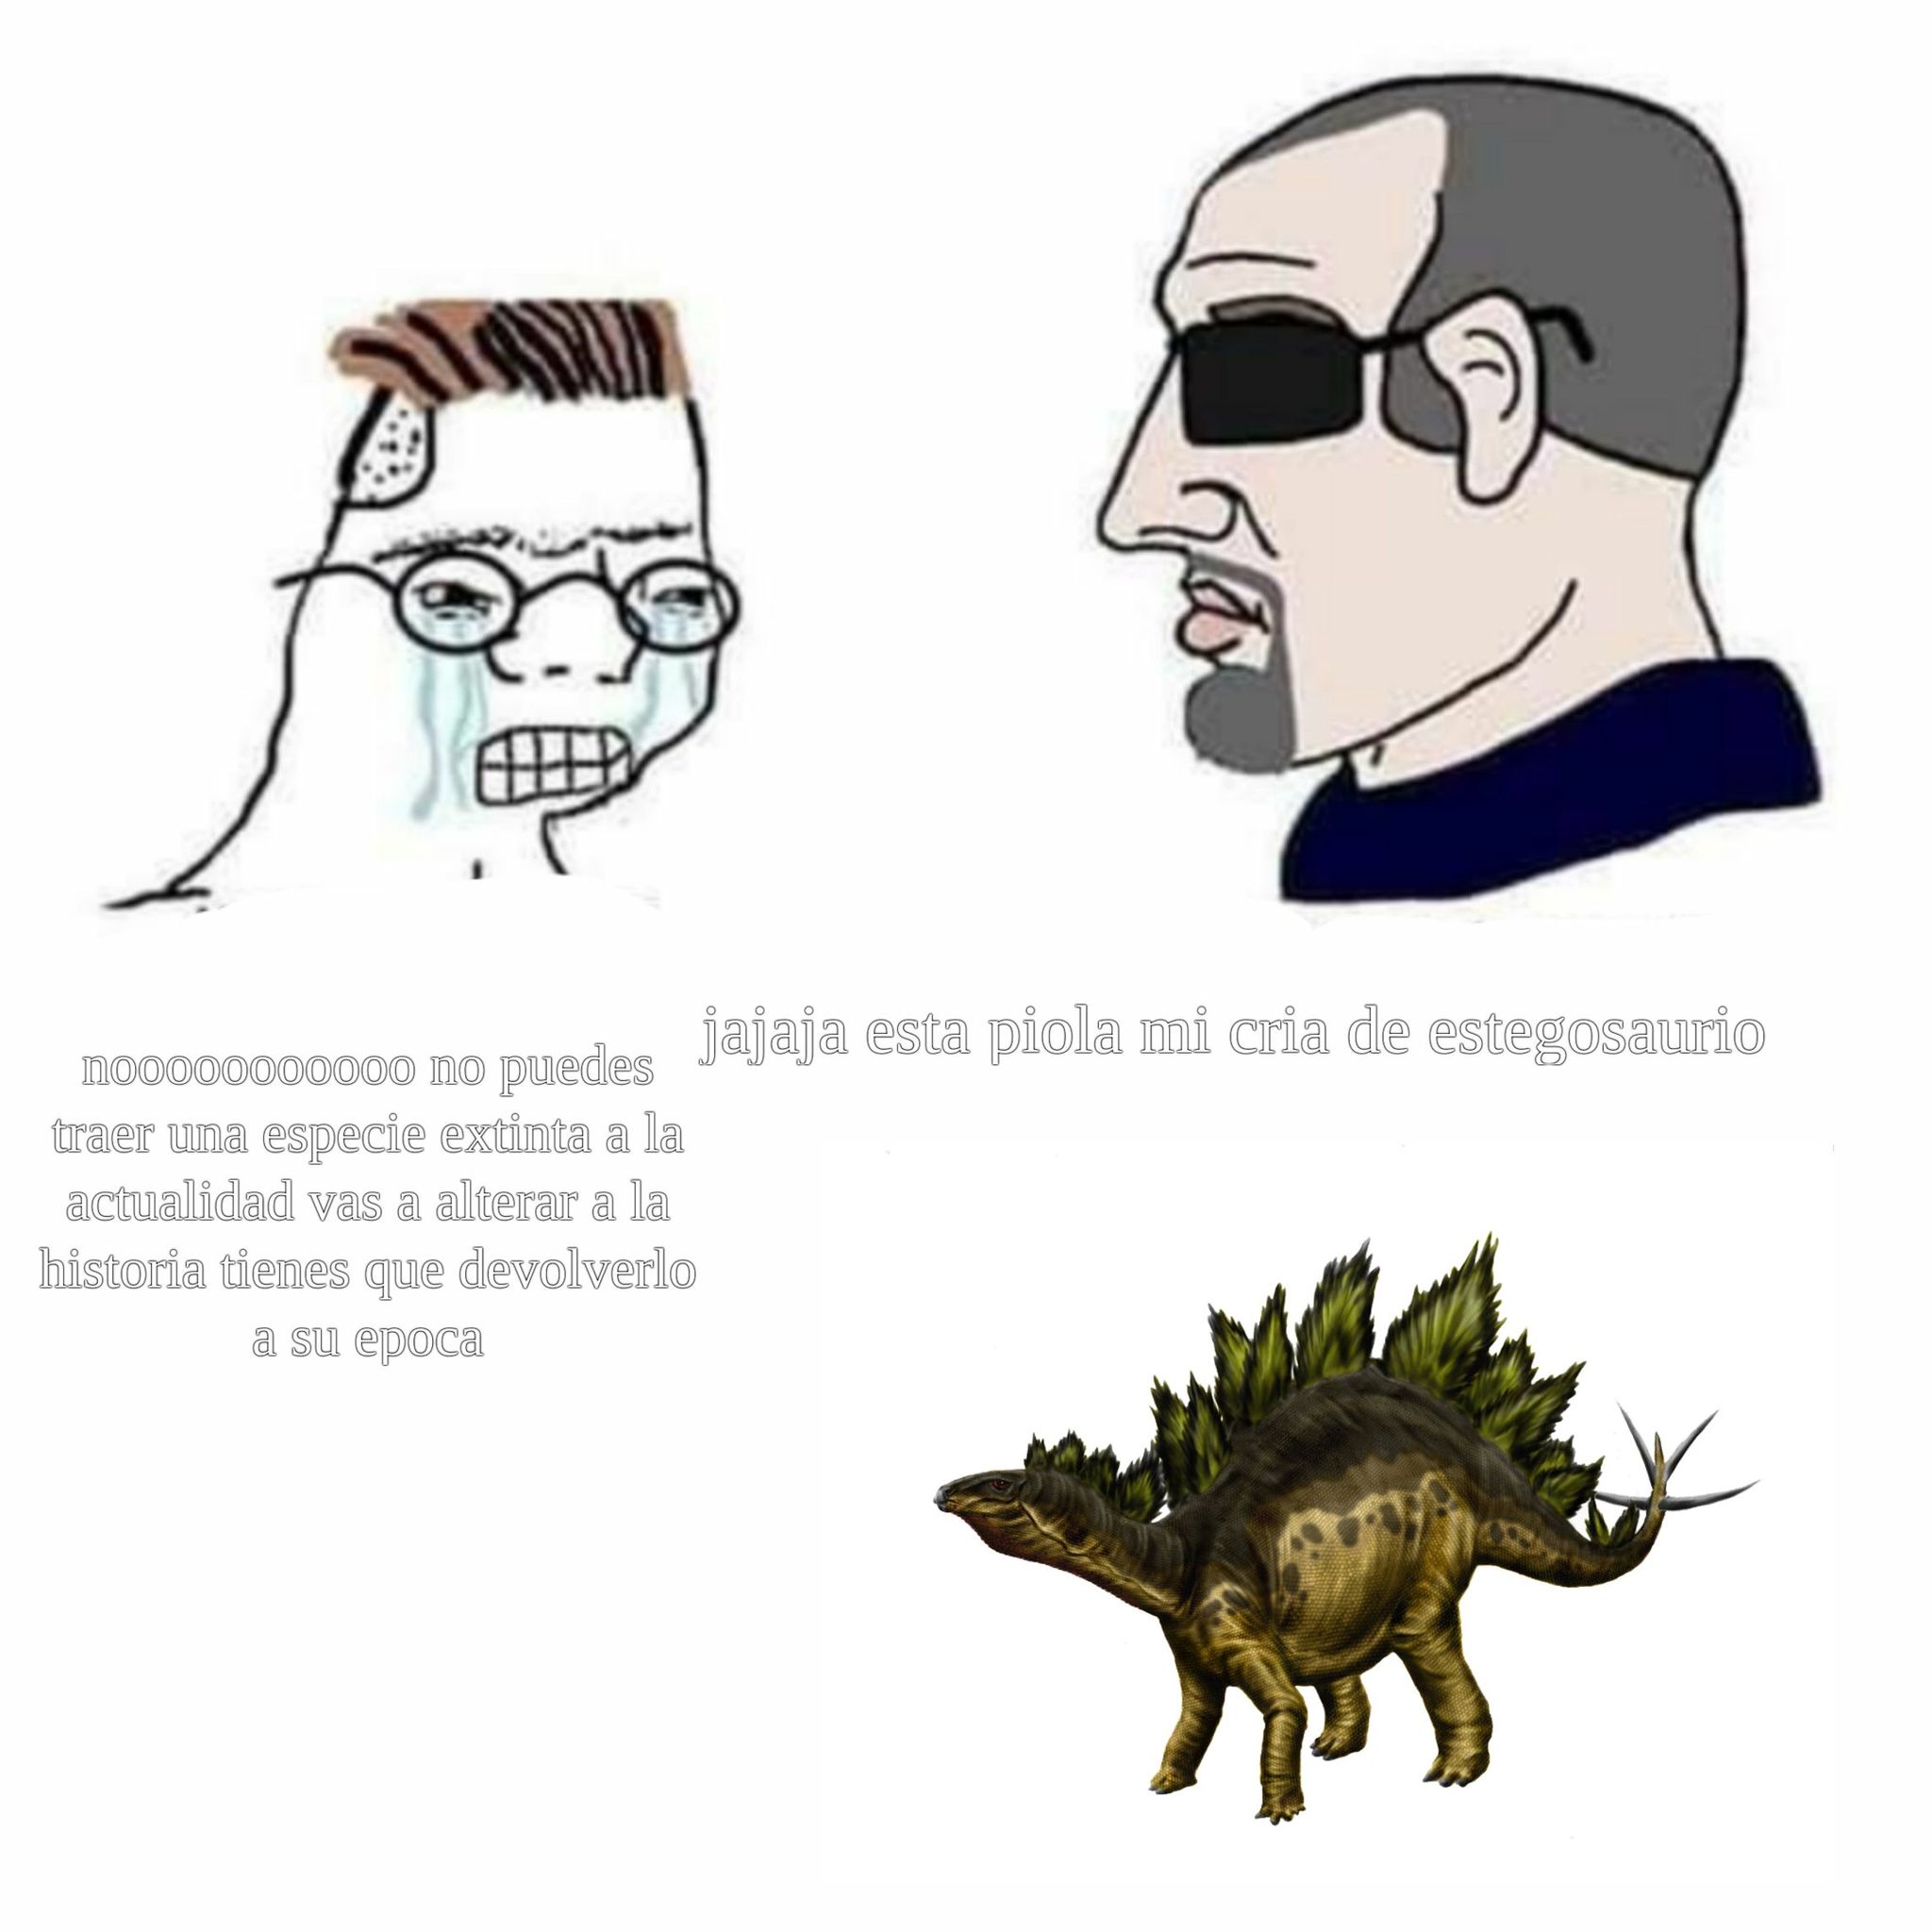 quien no quiere tener un stegosaurio xd - meme